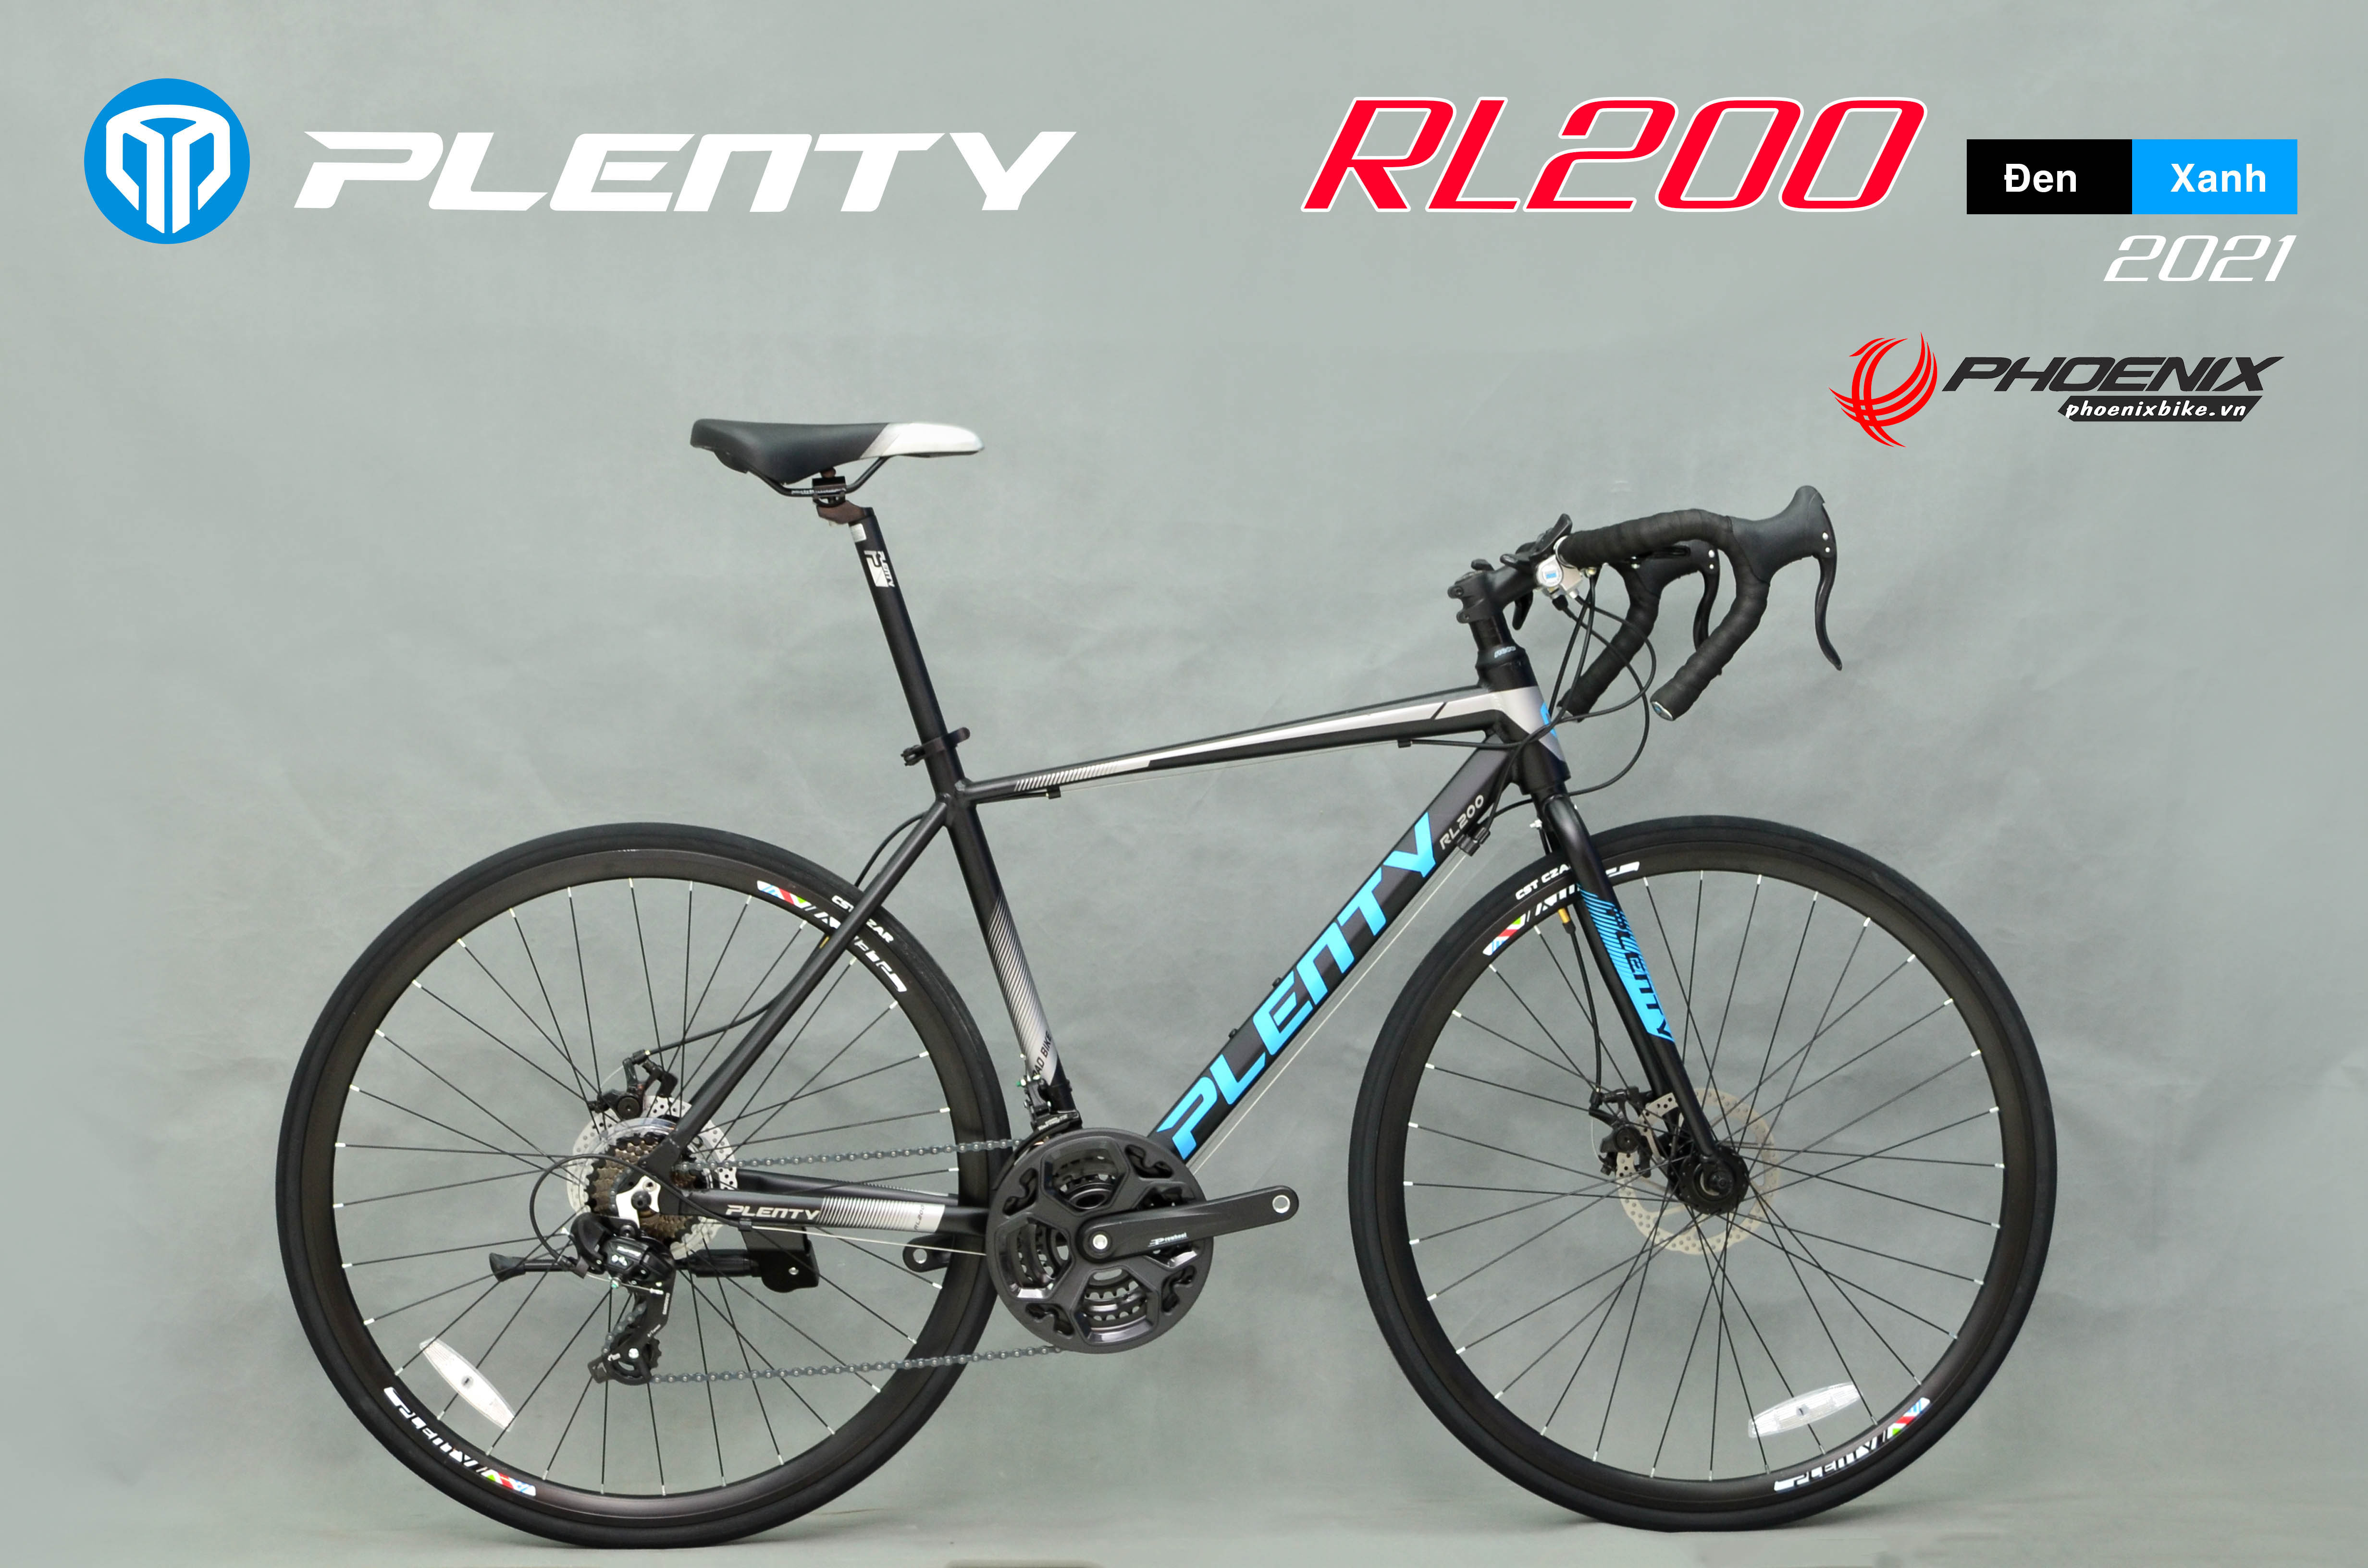 phoenixbike.vn xe đạp touring tay cong plenty rl200 2022 2